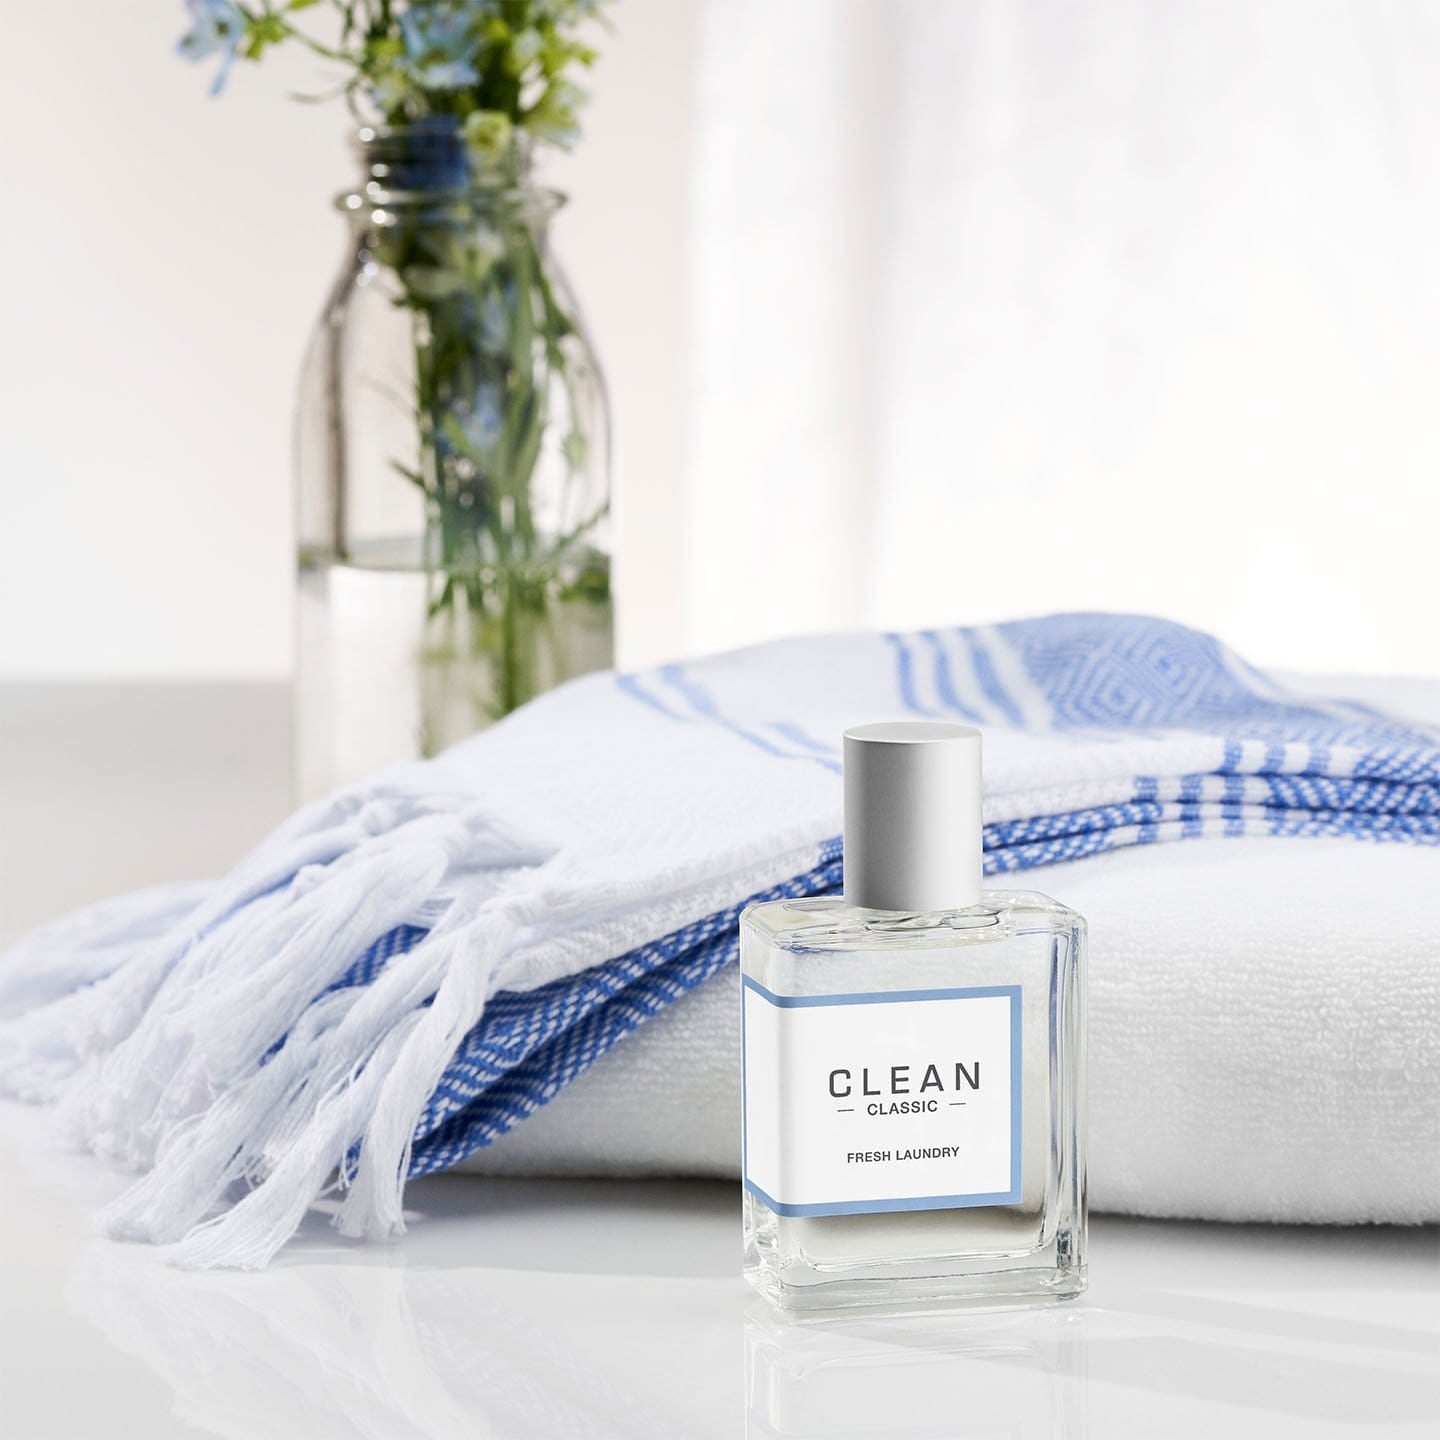 Clean Clean Fresh Linens Eau De Parfum Spray 1 Oz